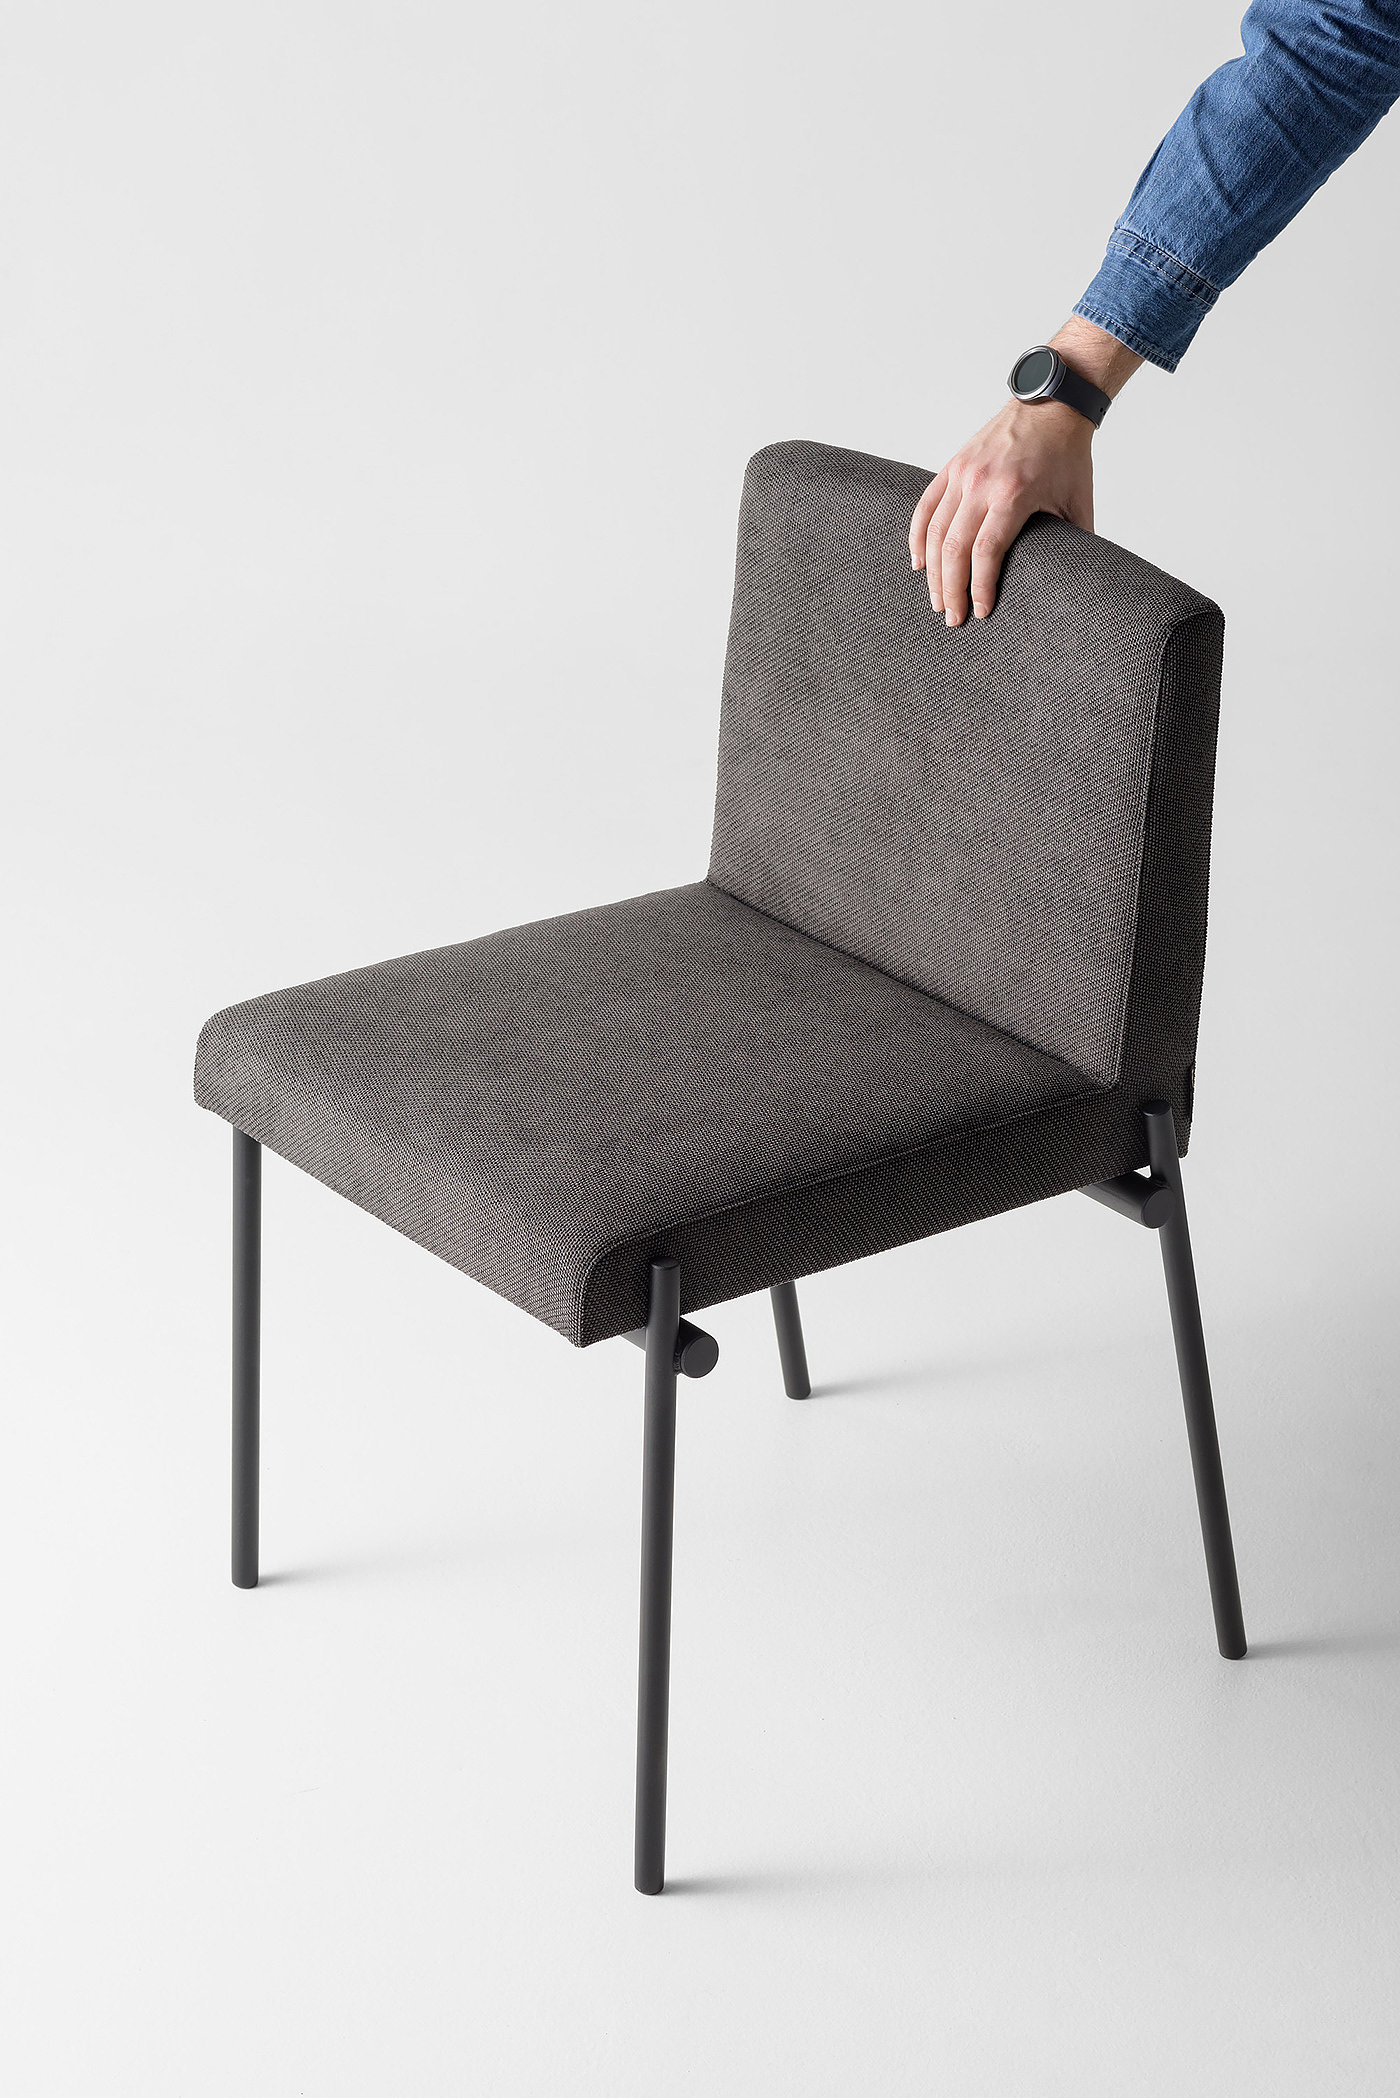 椅子，舒适，几何形状，轻巧，